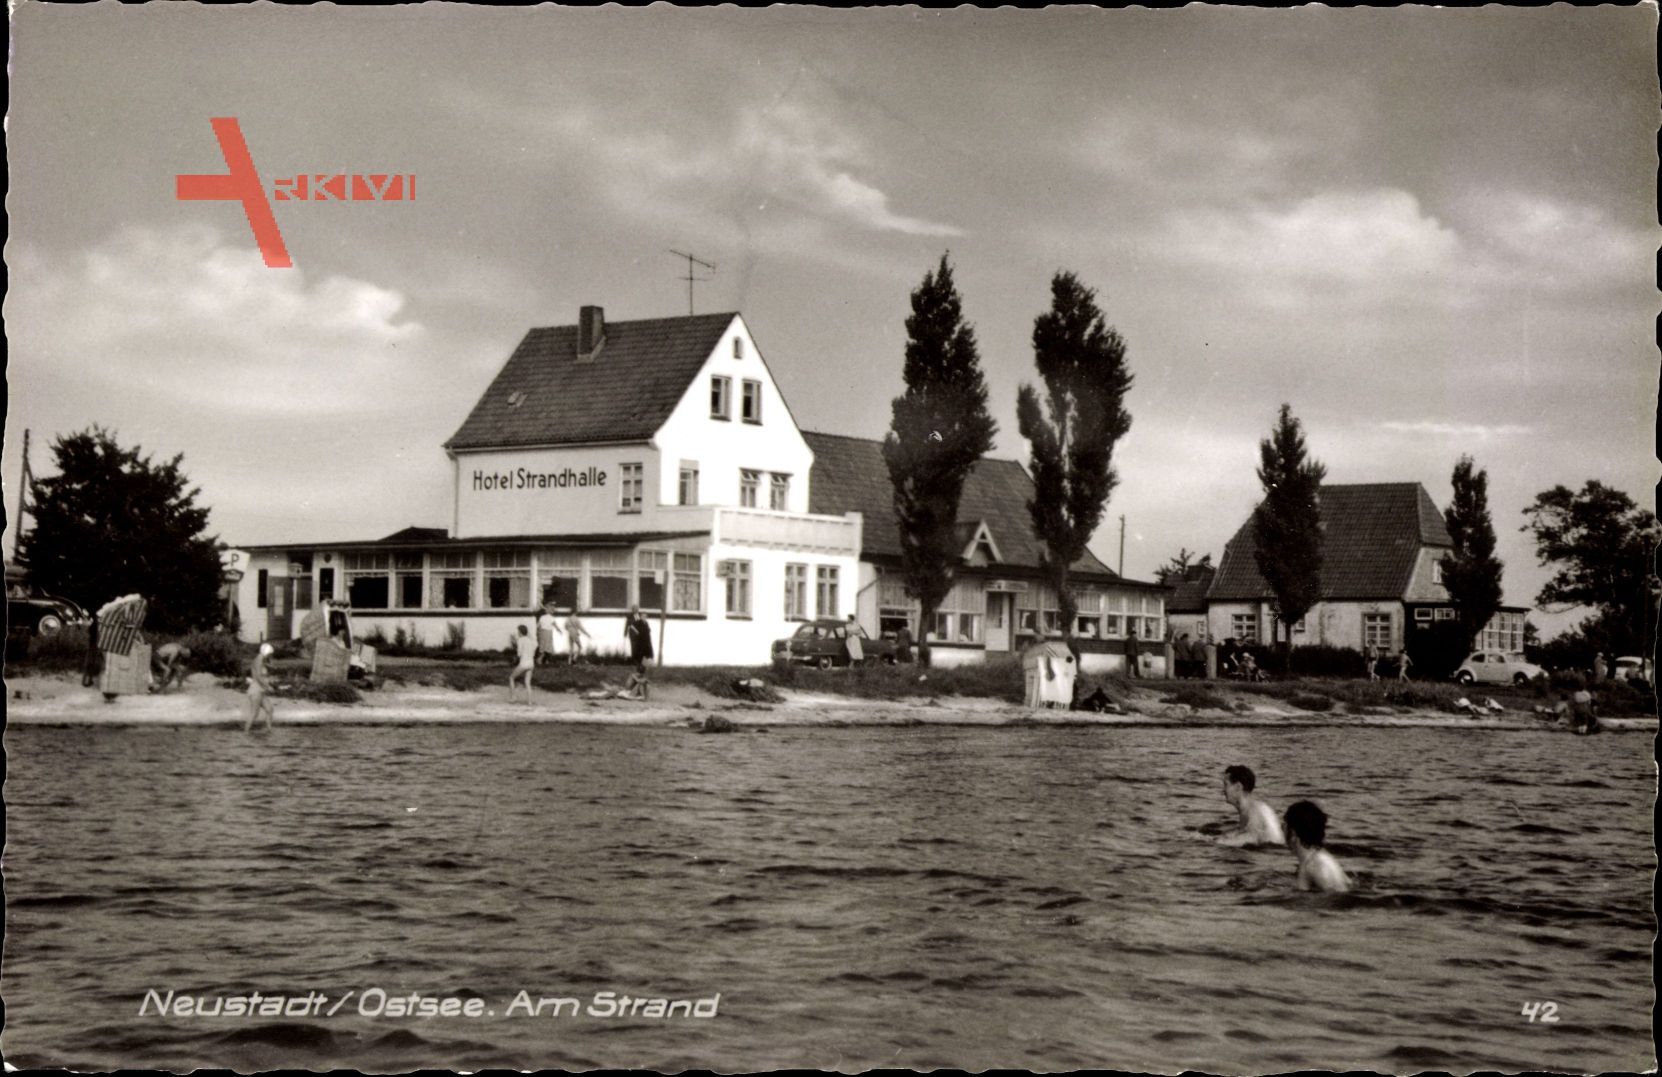 Neustadt Ostsee, Blick aus dem Wasser auf das Hotel Strandhalle, Badende